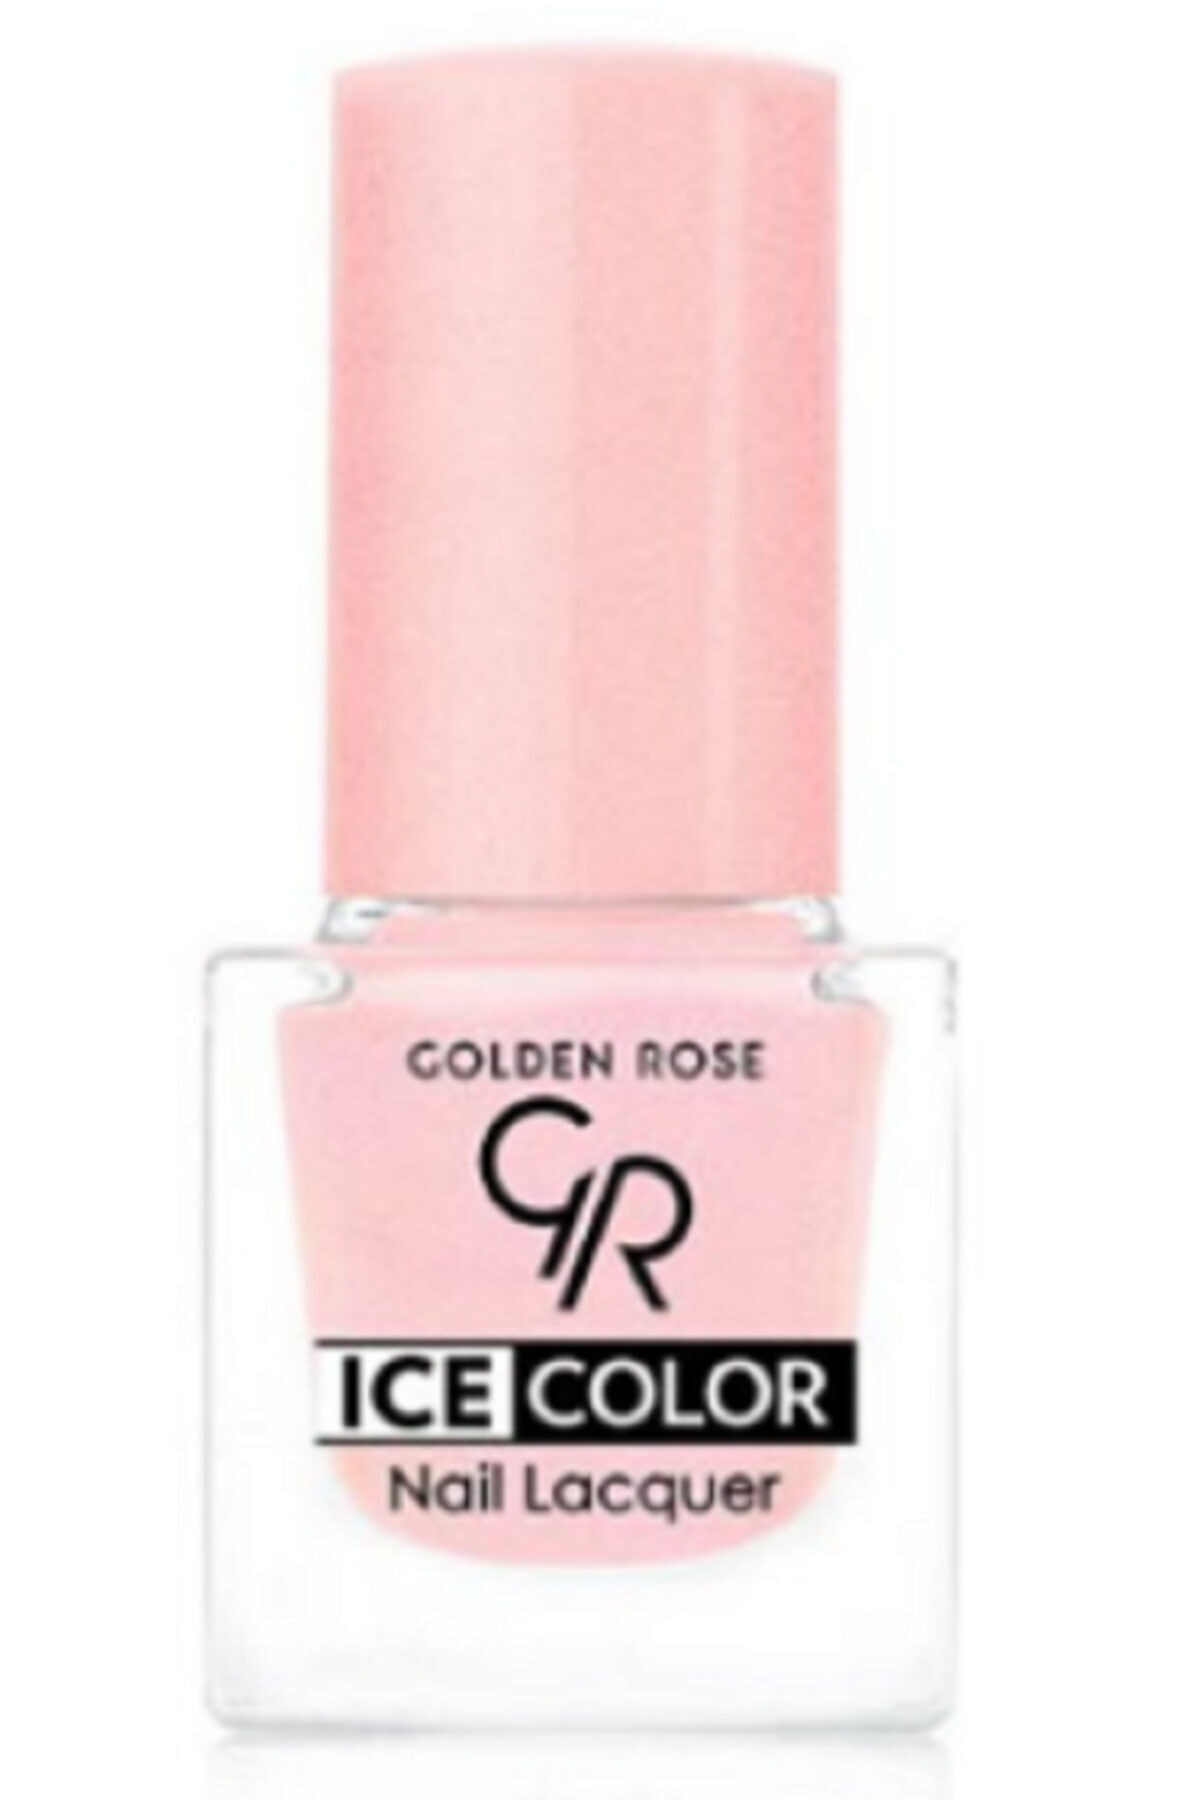 لاک ناخن یخی آیس چیک ICE شماره 115 رنگ صورتی گلدن رز Golden Rose